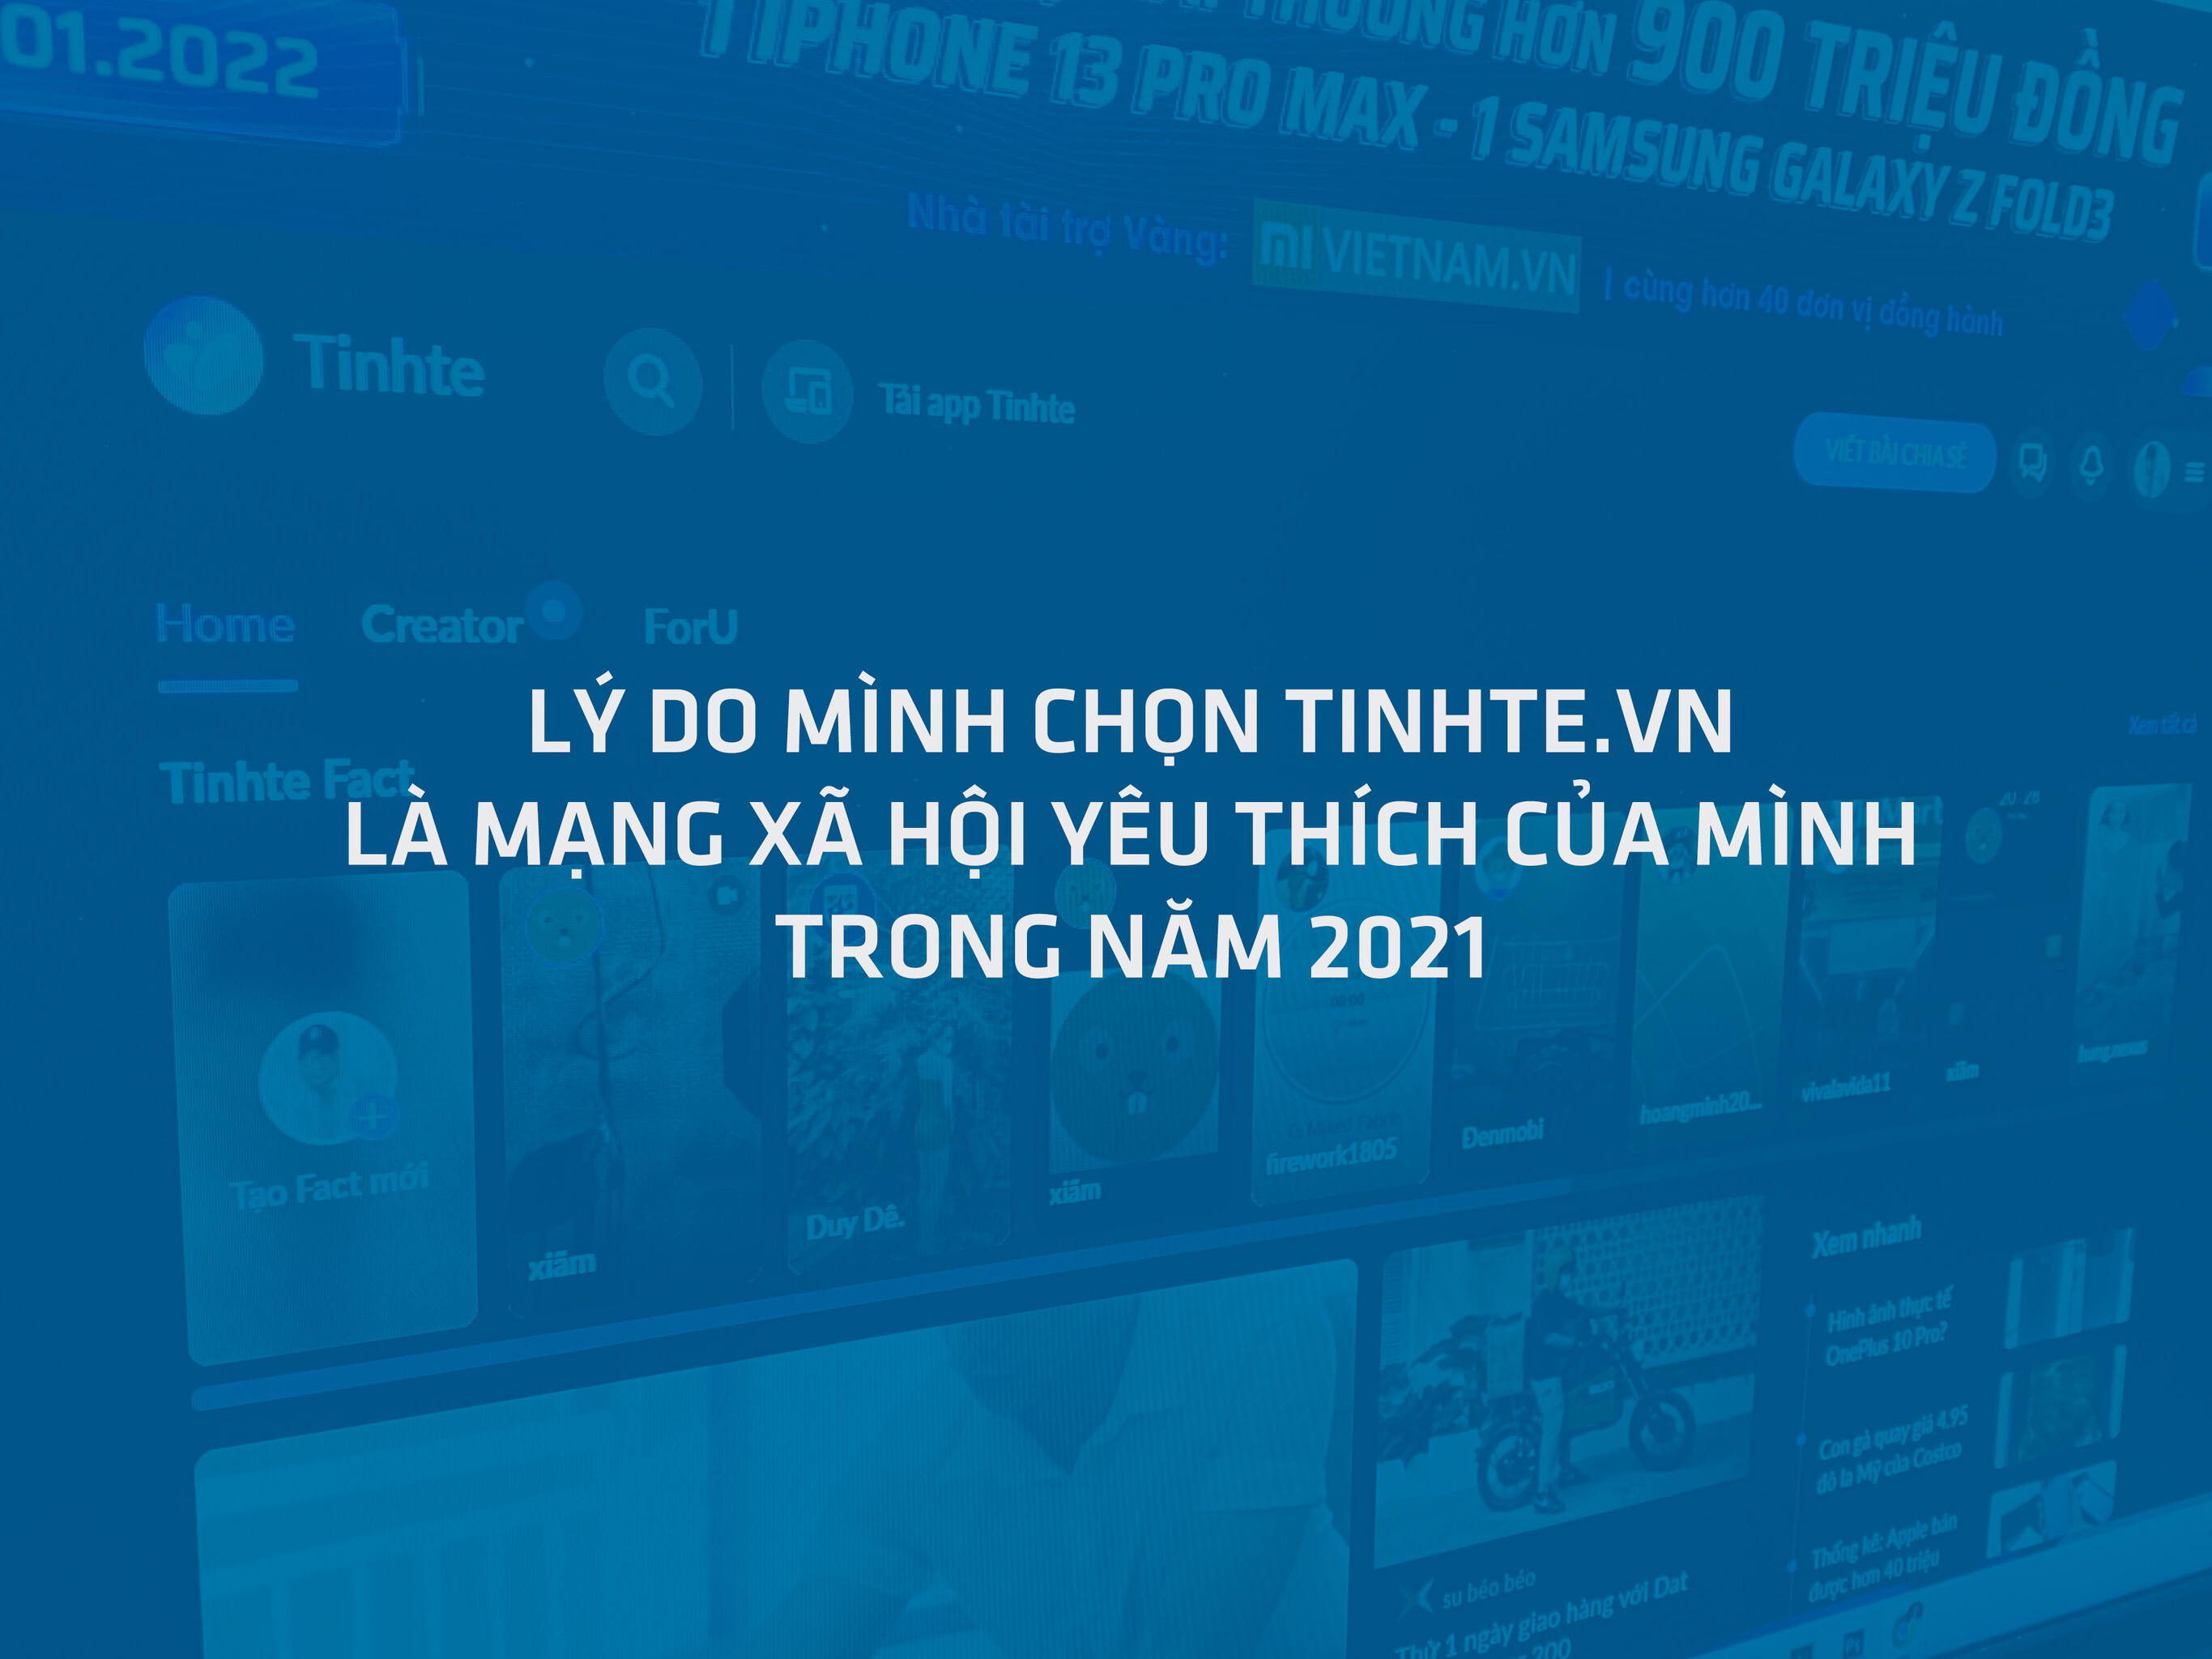 #TTBC21: Lý do mình chọn Tinhte.vn là mạng xã hội yêu thích của mình trong năm 2021